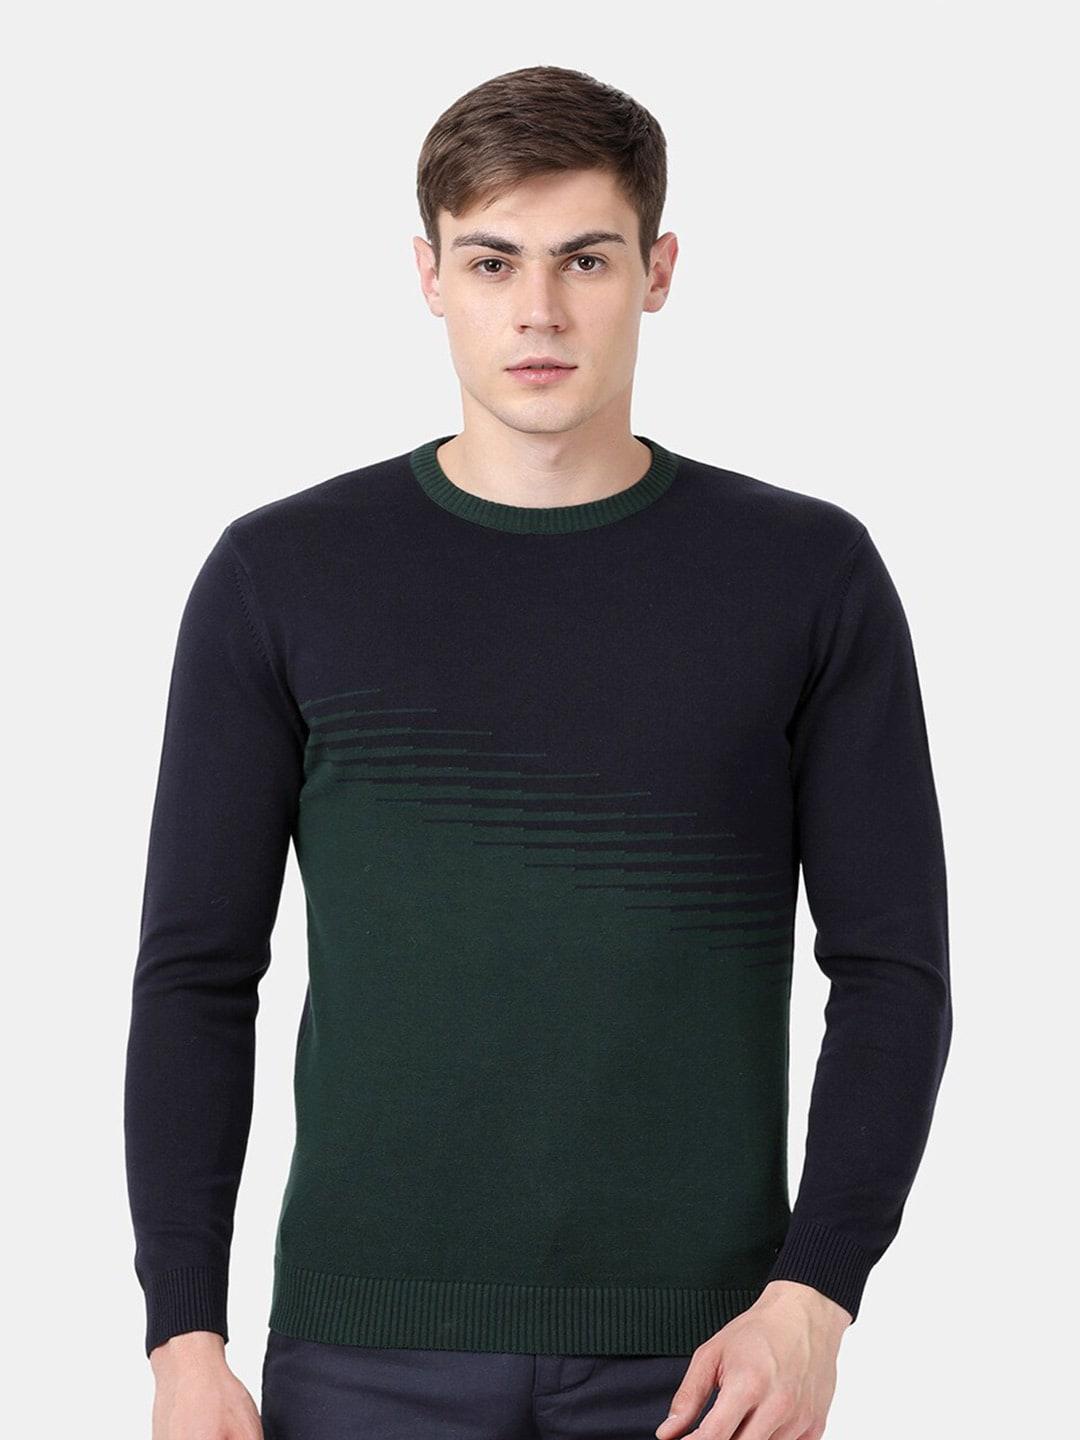 t-base men green & black colourblocked pullover